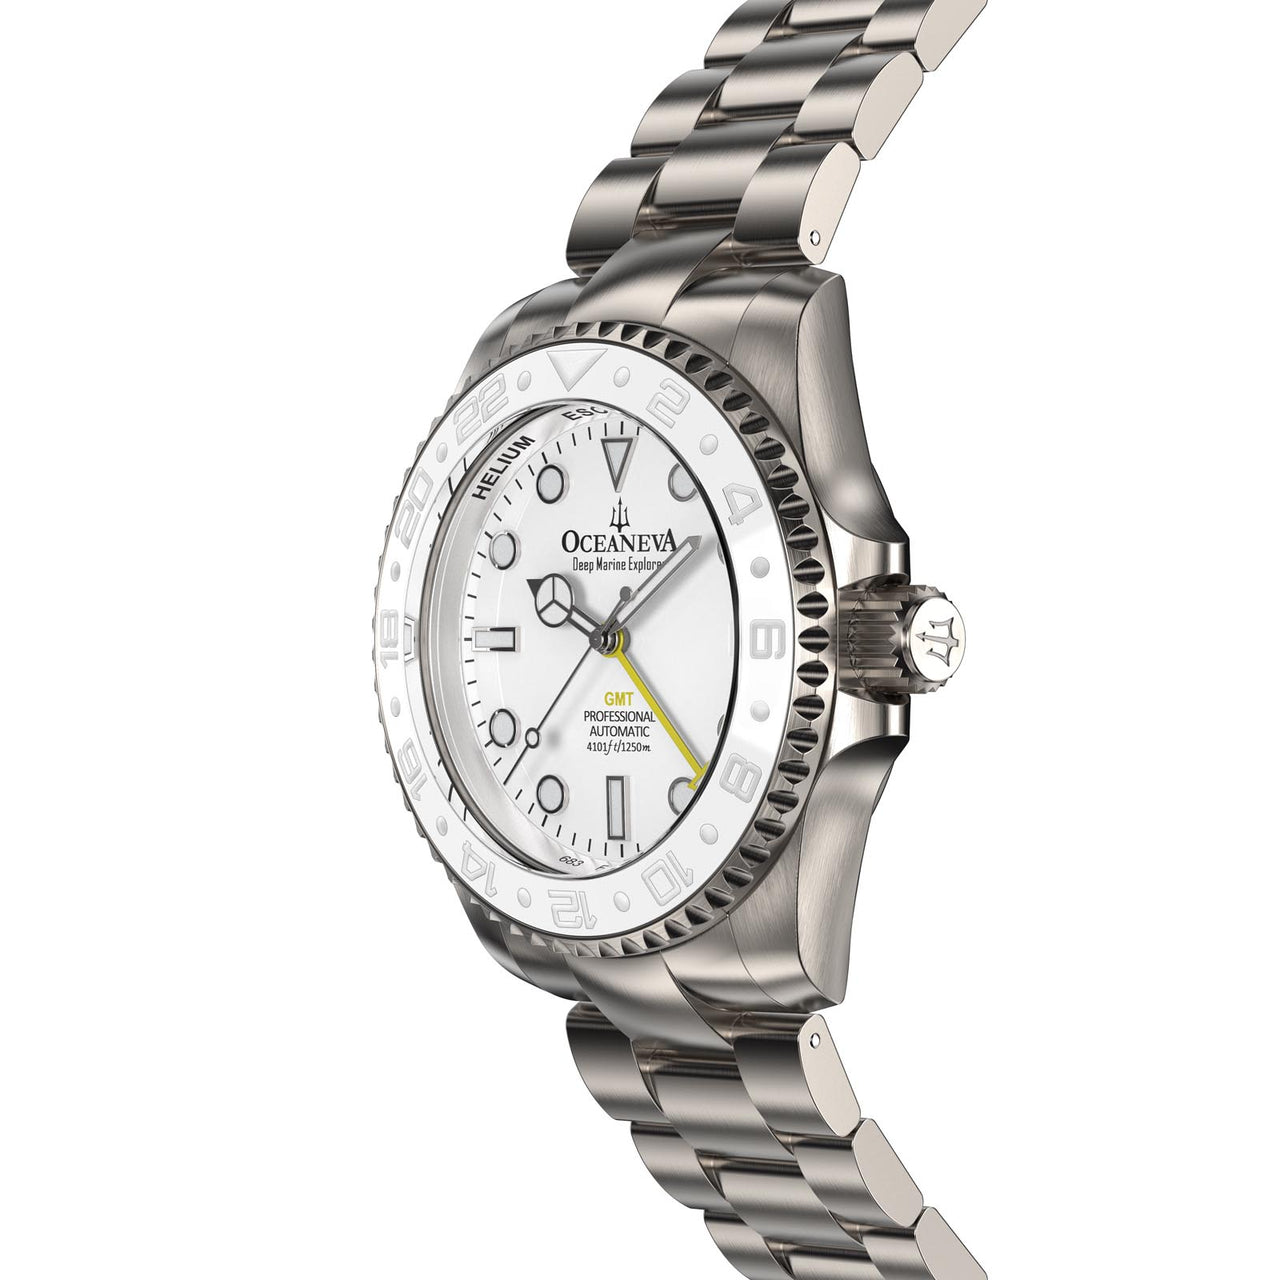 Profile view of Oceaneva Titanium GMT Automatic Watch showcasing its elegant design